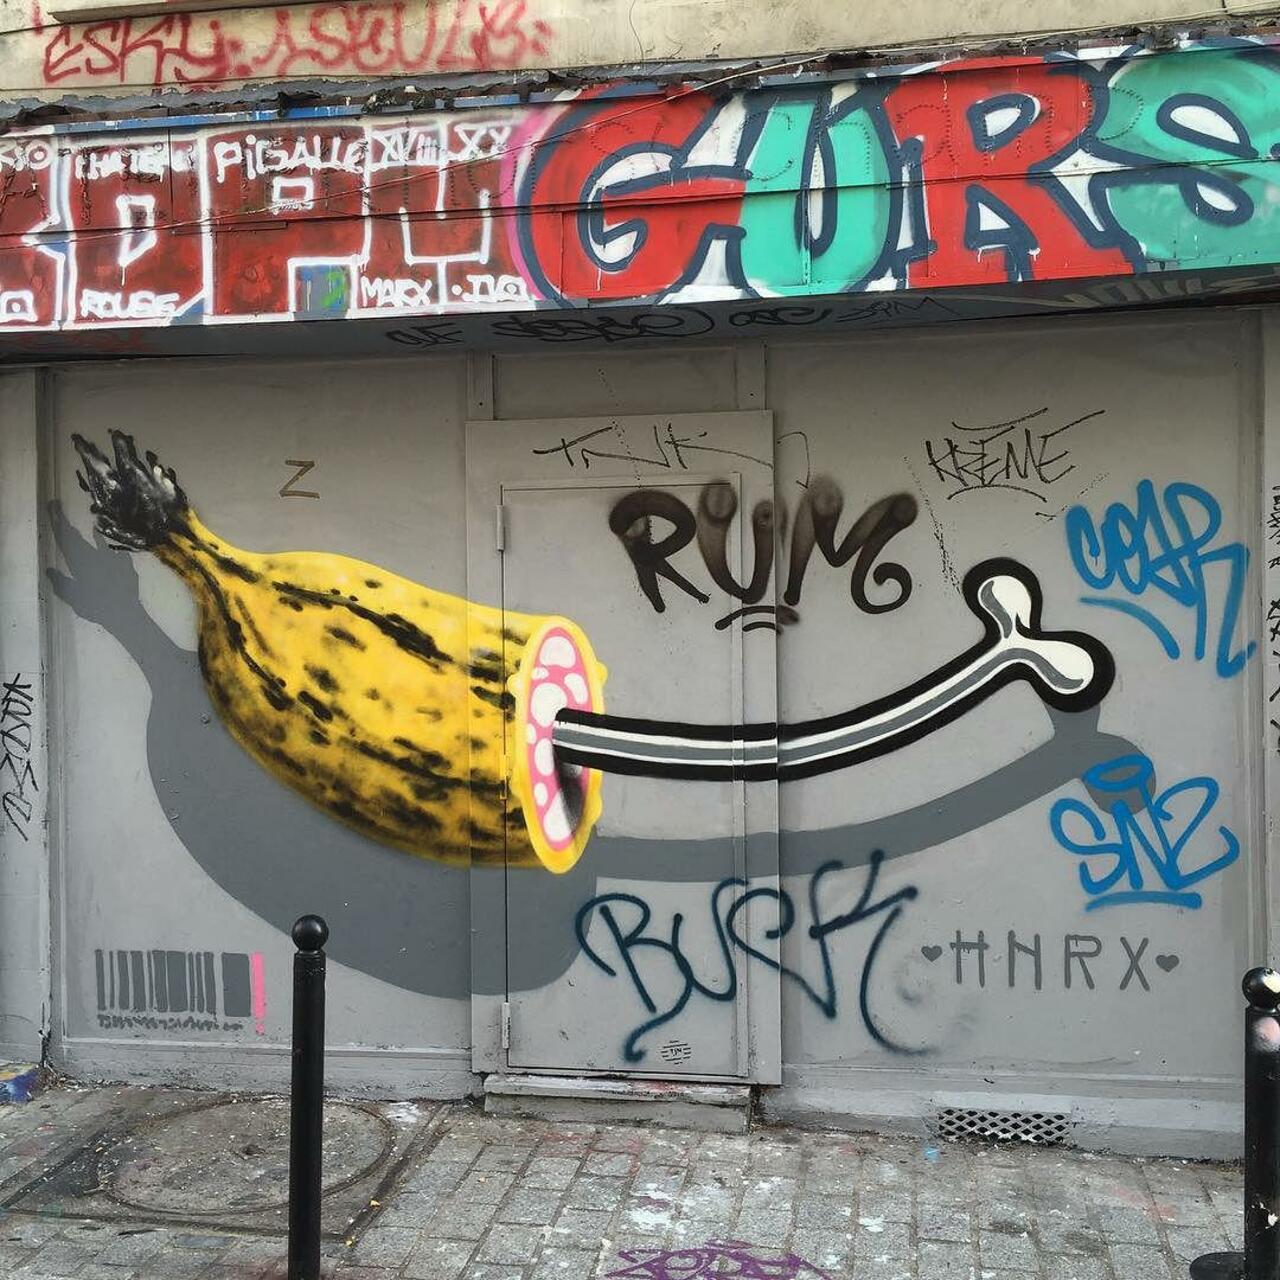 #Paris #graffiti photo by @ijustdontknow http://ift.tt/1Pqrvx7 #StreetArt http://t.co/DLdWm4Abp2